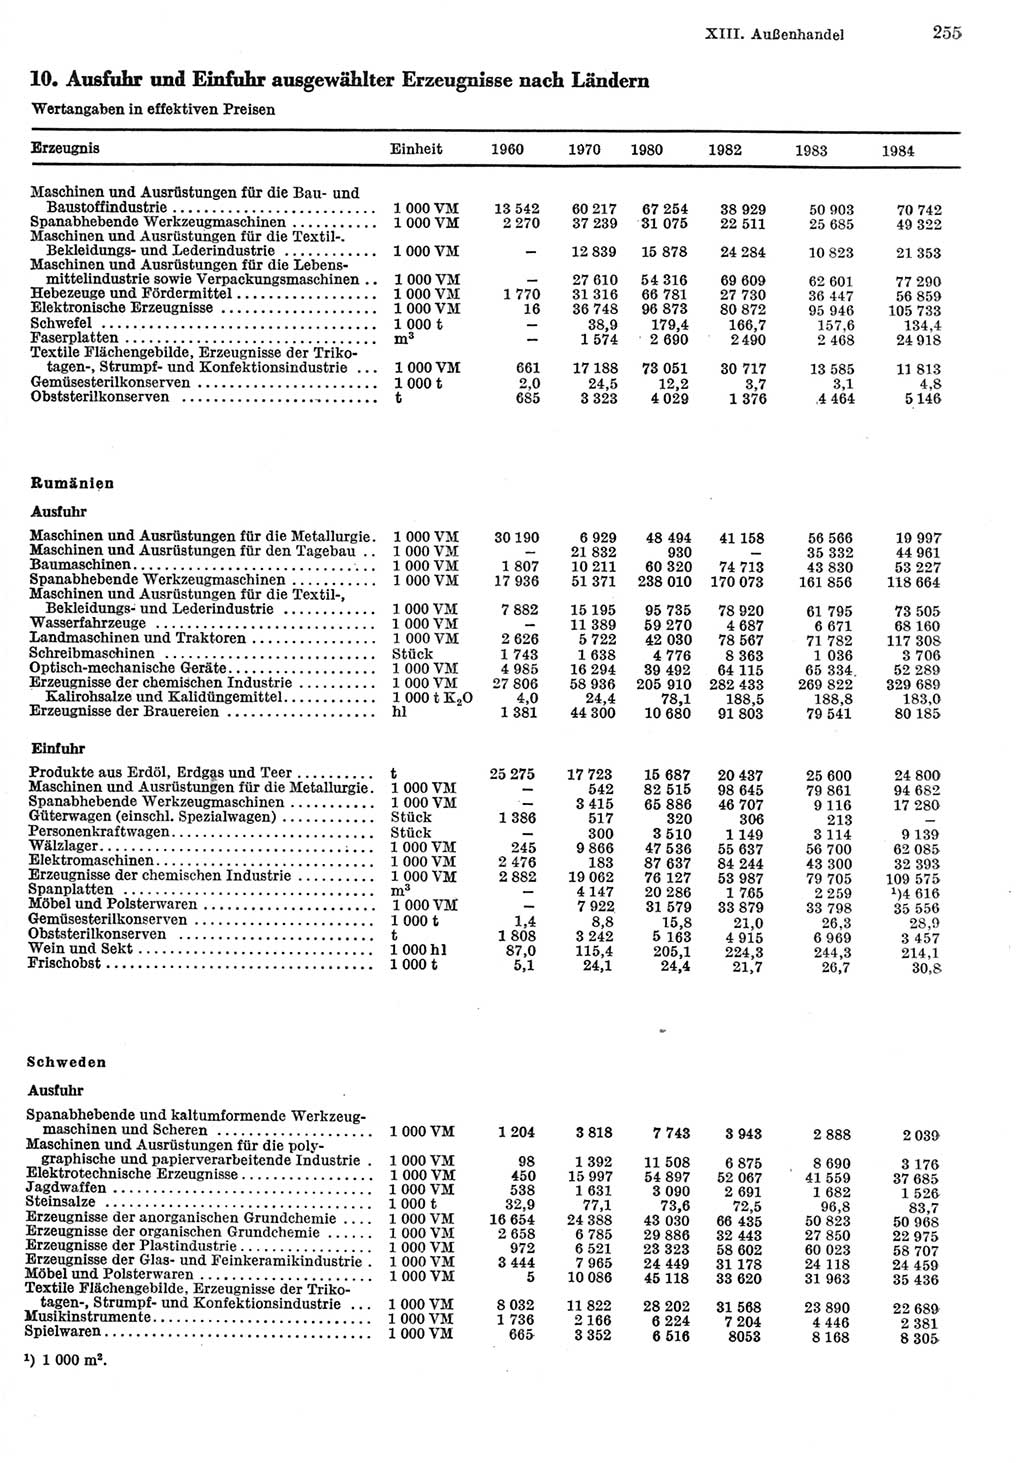 Statistisches Jahrbuch der Deutschen Demokratischen Republik (DDR) 1985, Seite 255 (Stat. Jb. DDR 1985, S. 255)